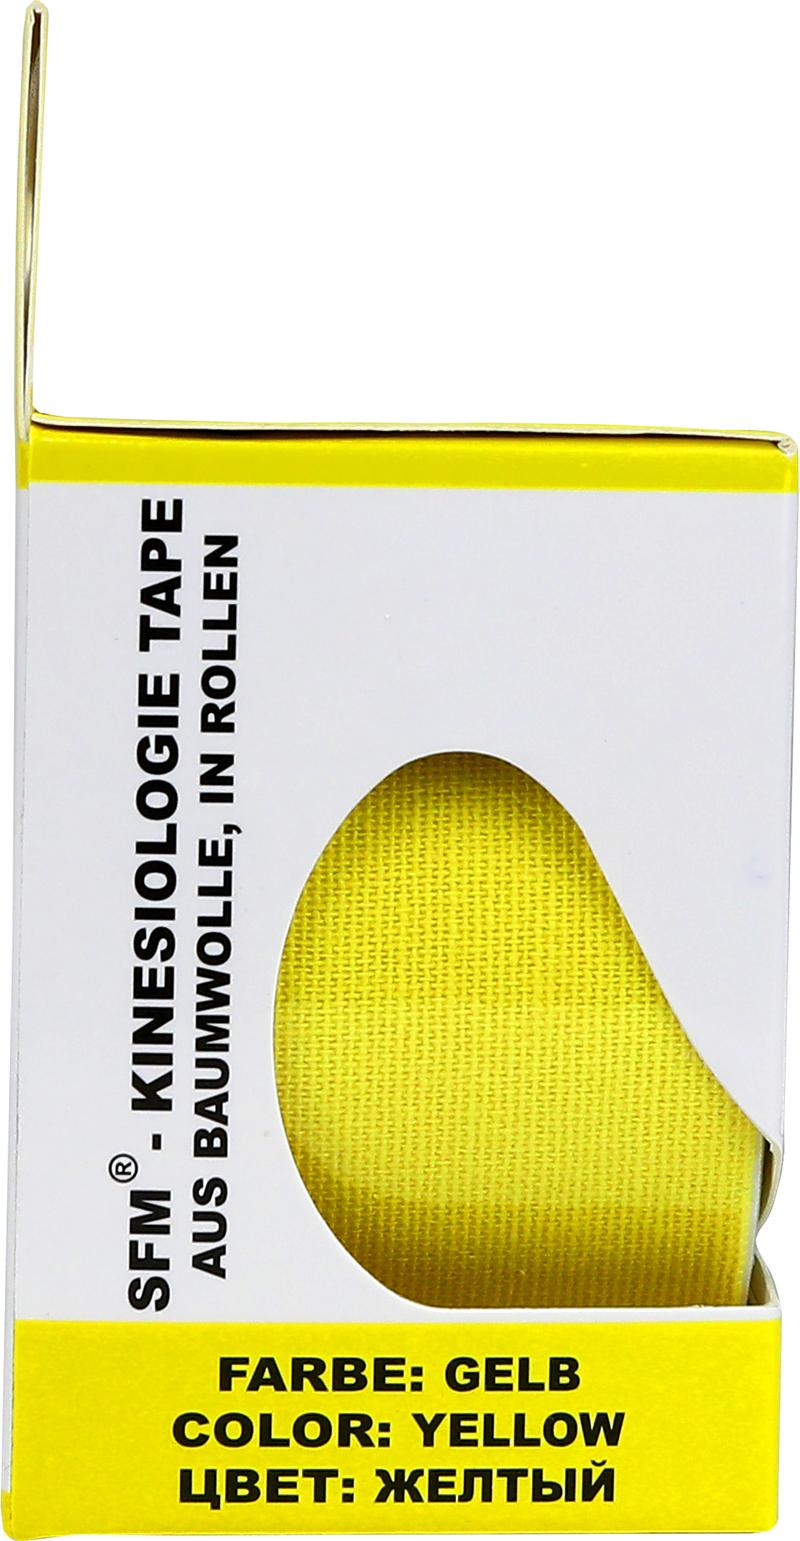 Лента кинезиологическая SFM-Plaster, на хлопковой основе, 5см Х 500см,  желтого цвета, в диспенсере